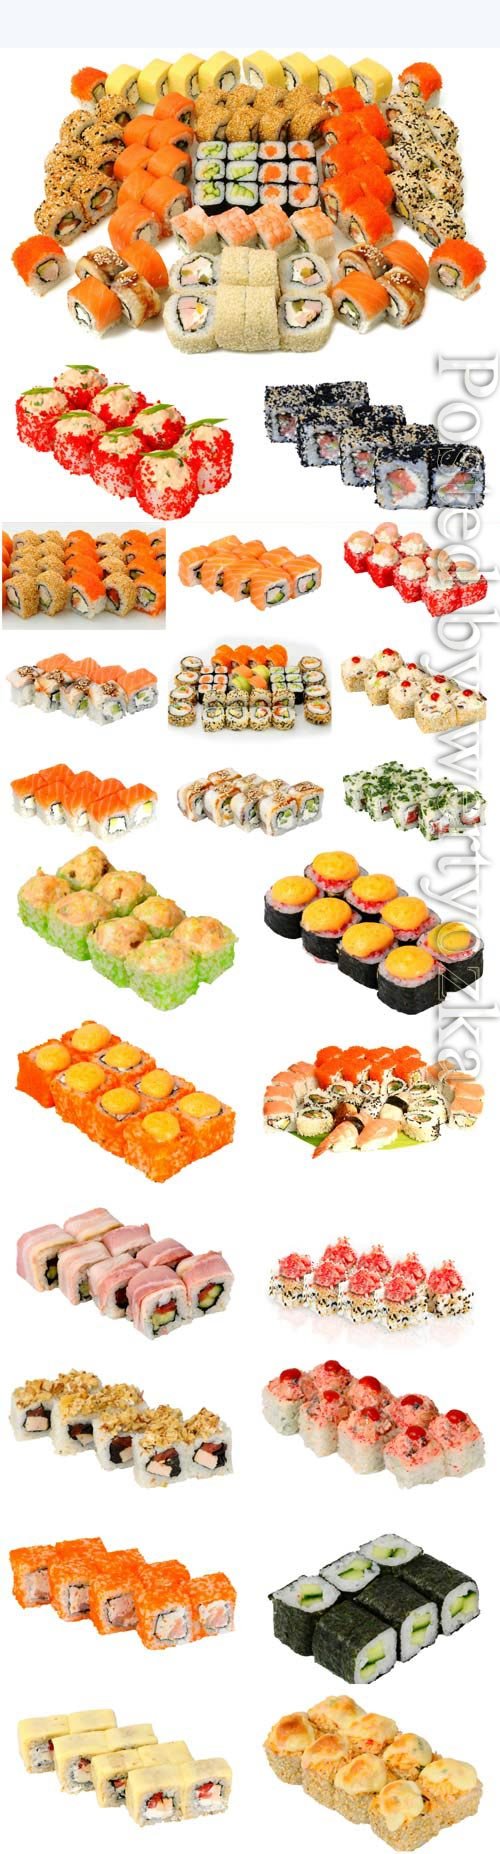 Assortment of sushi on white background stock photo